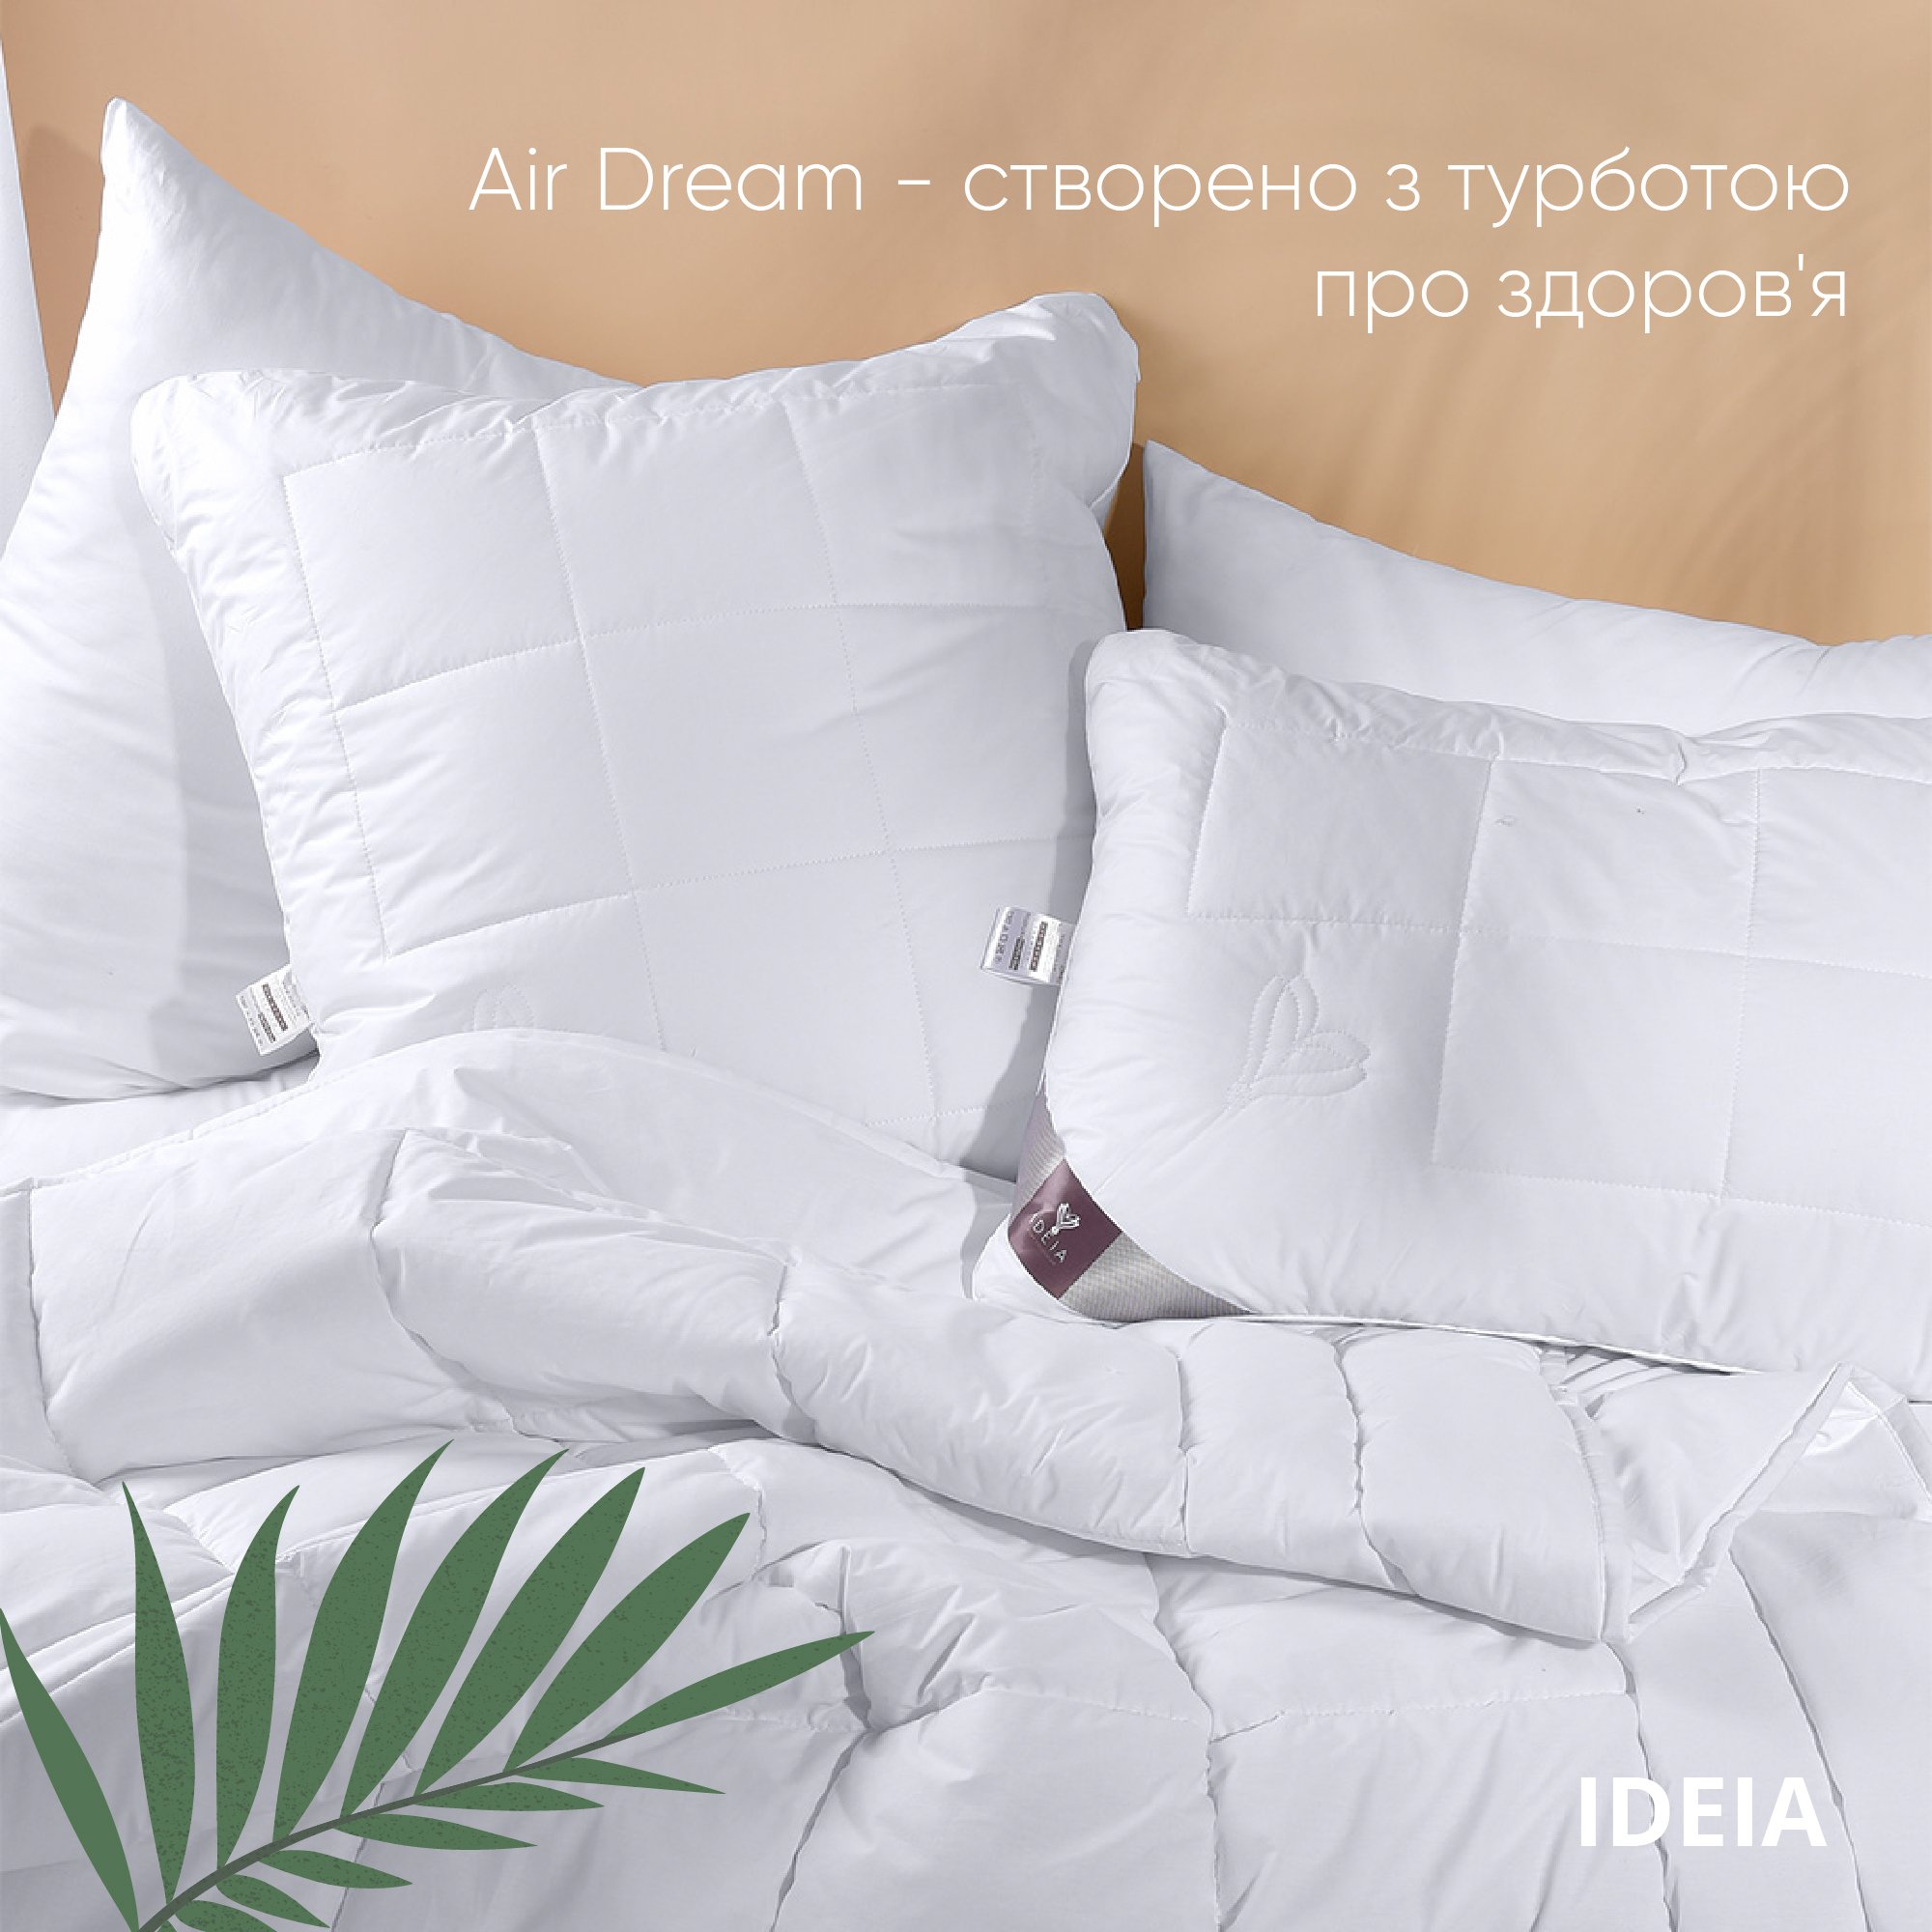 Ковдра Ideia Air Dream Premium зимова, 210х140, білий (8-11694) - фото 6